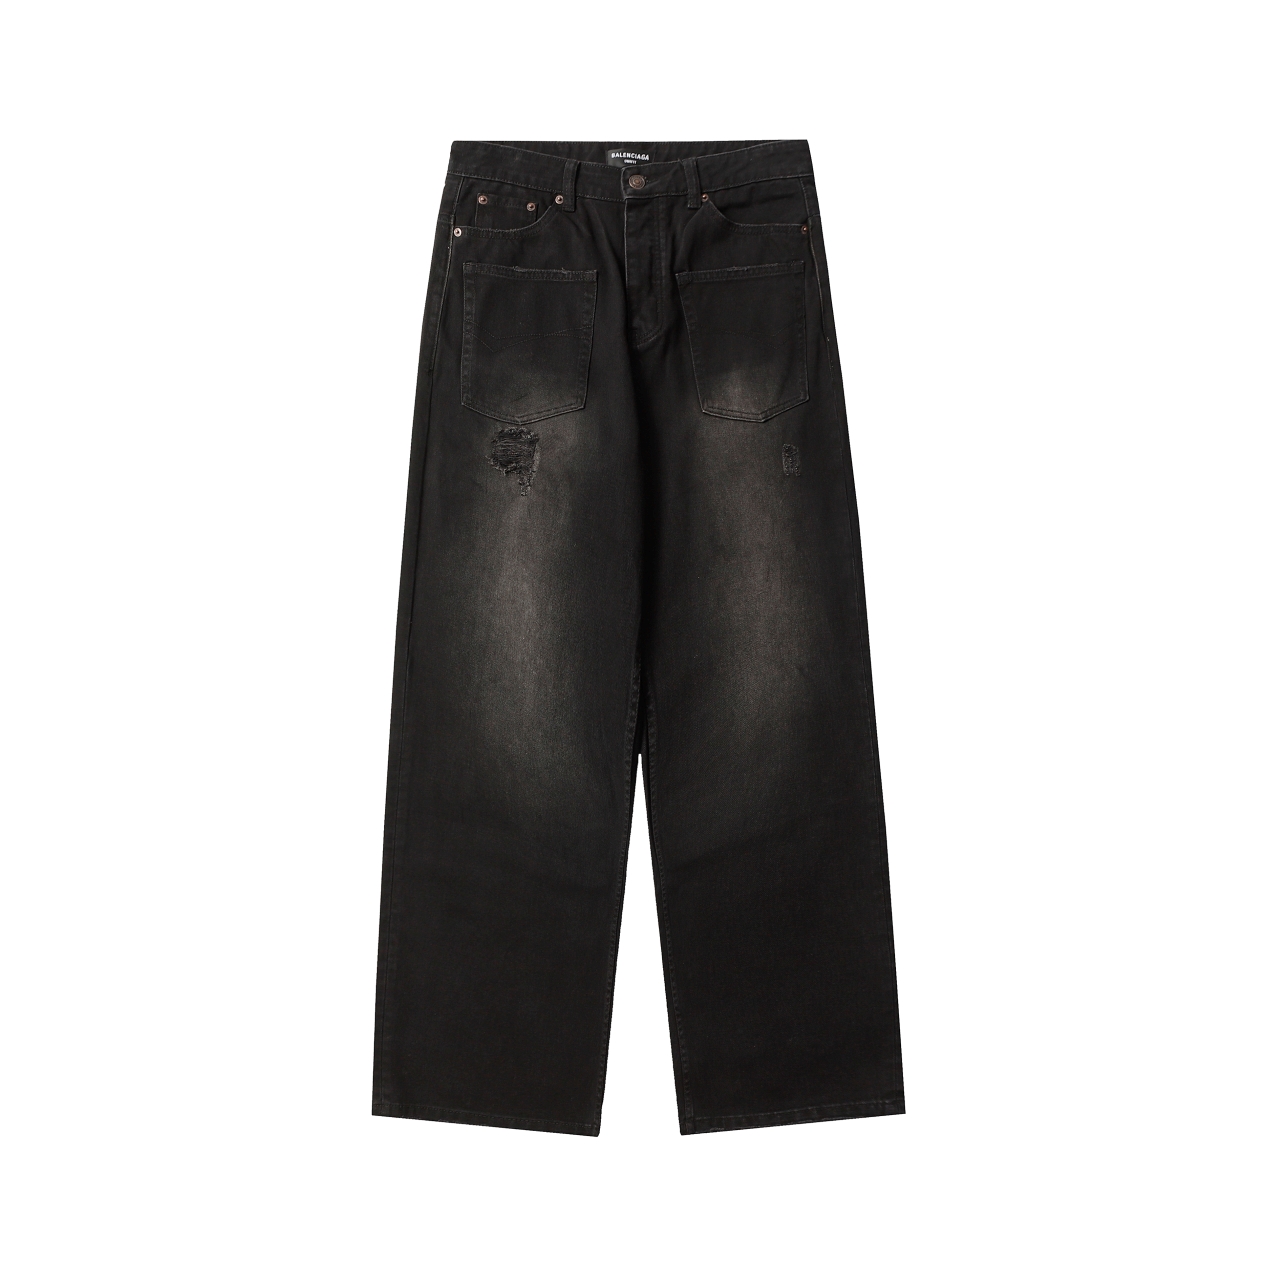 Balenciaga Vêtements Jeans Culottes & Pantalons Noir Unisexe Coton Collection printemps – été